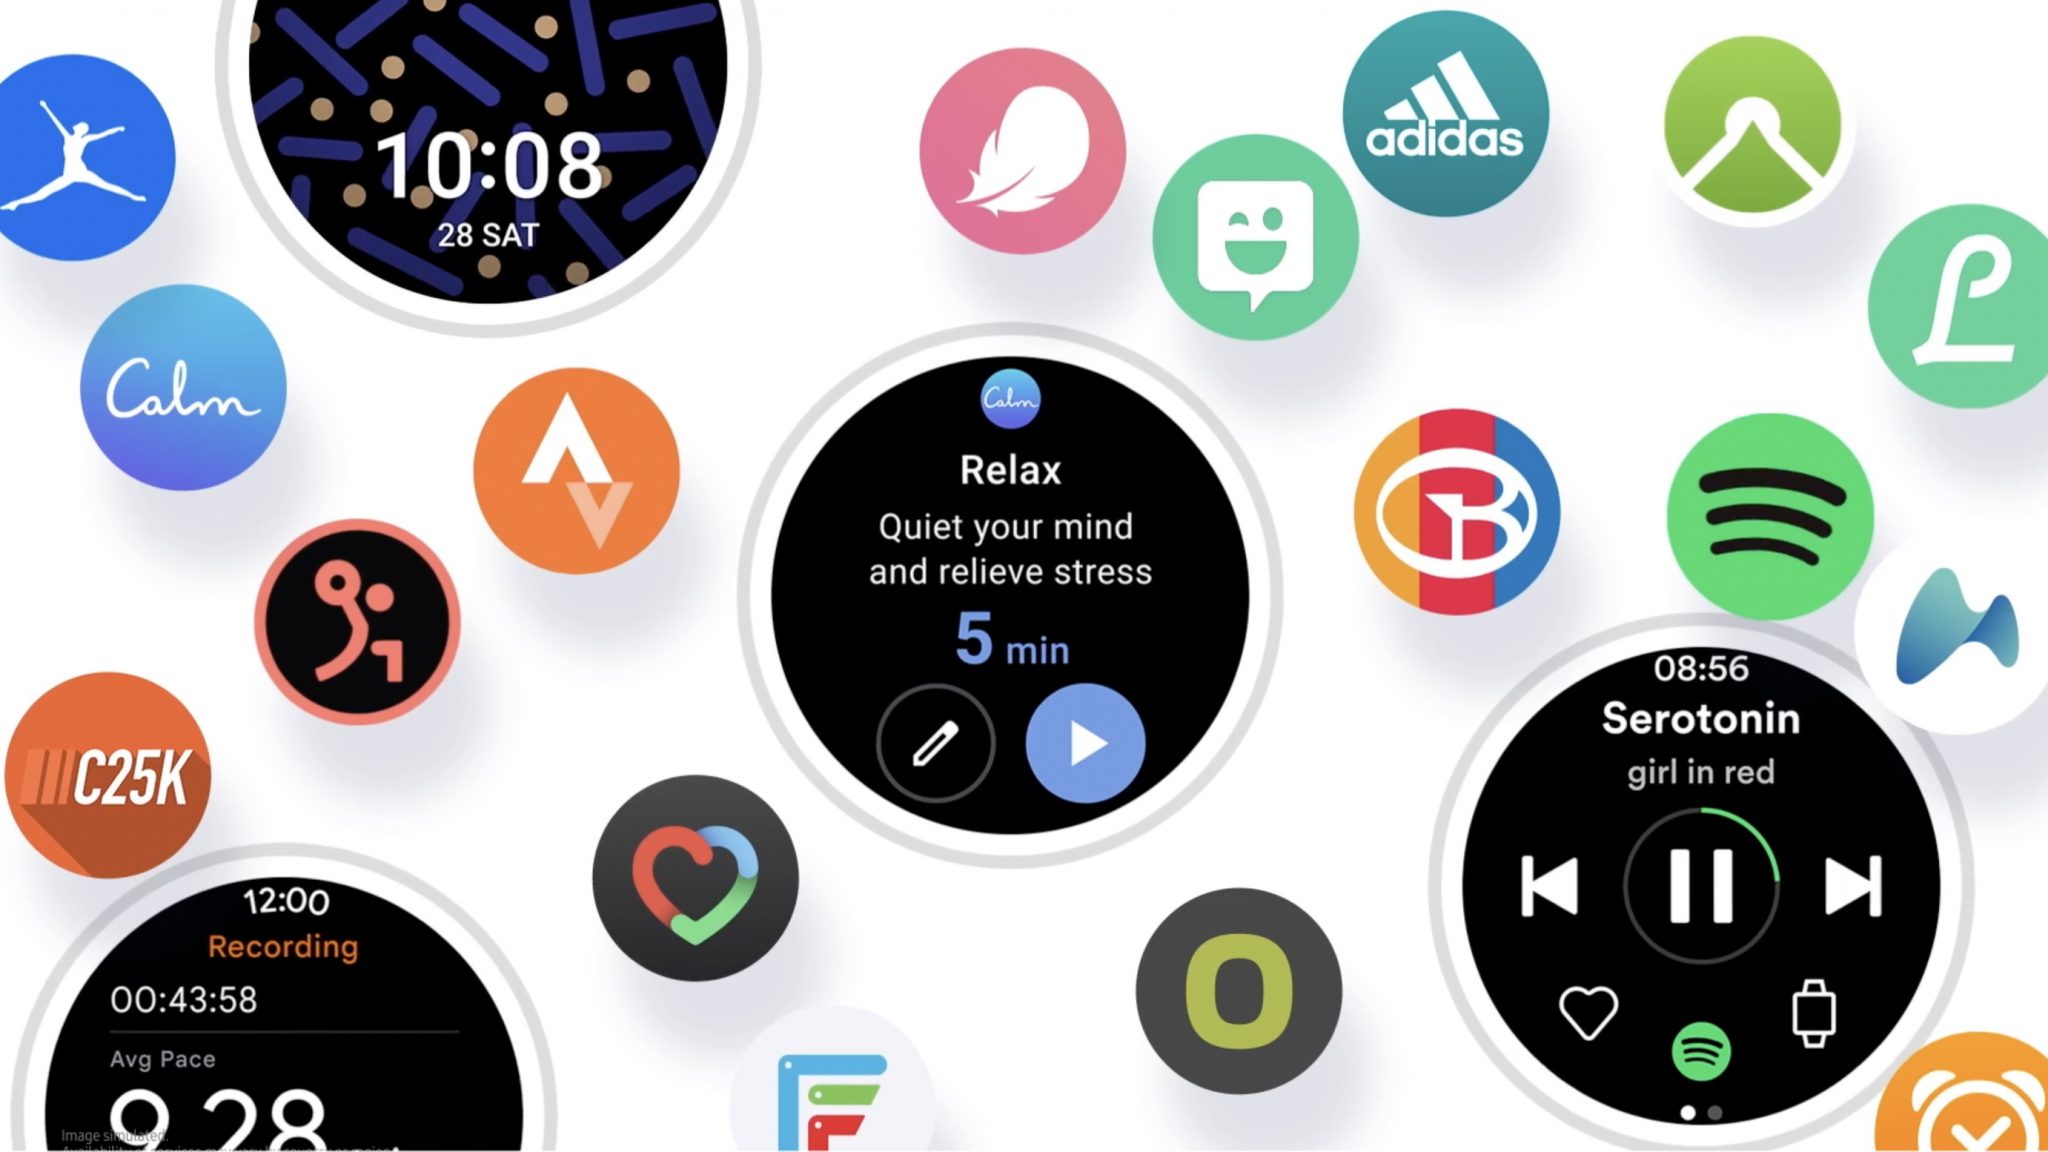 Samsung Galaxy Watch budú fungovať podobne ako Apple Watch